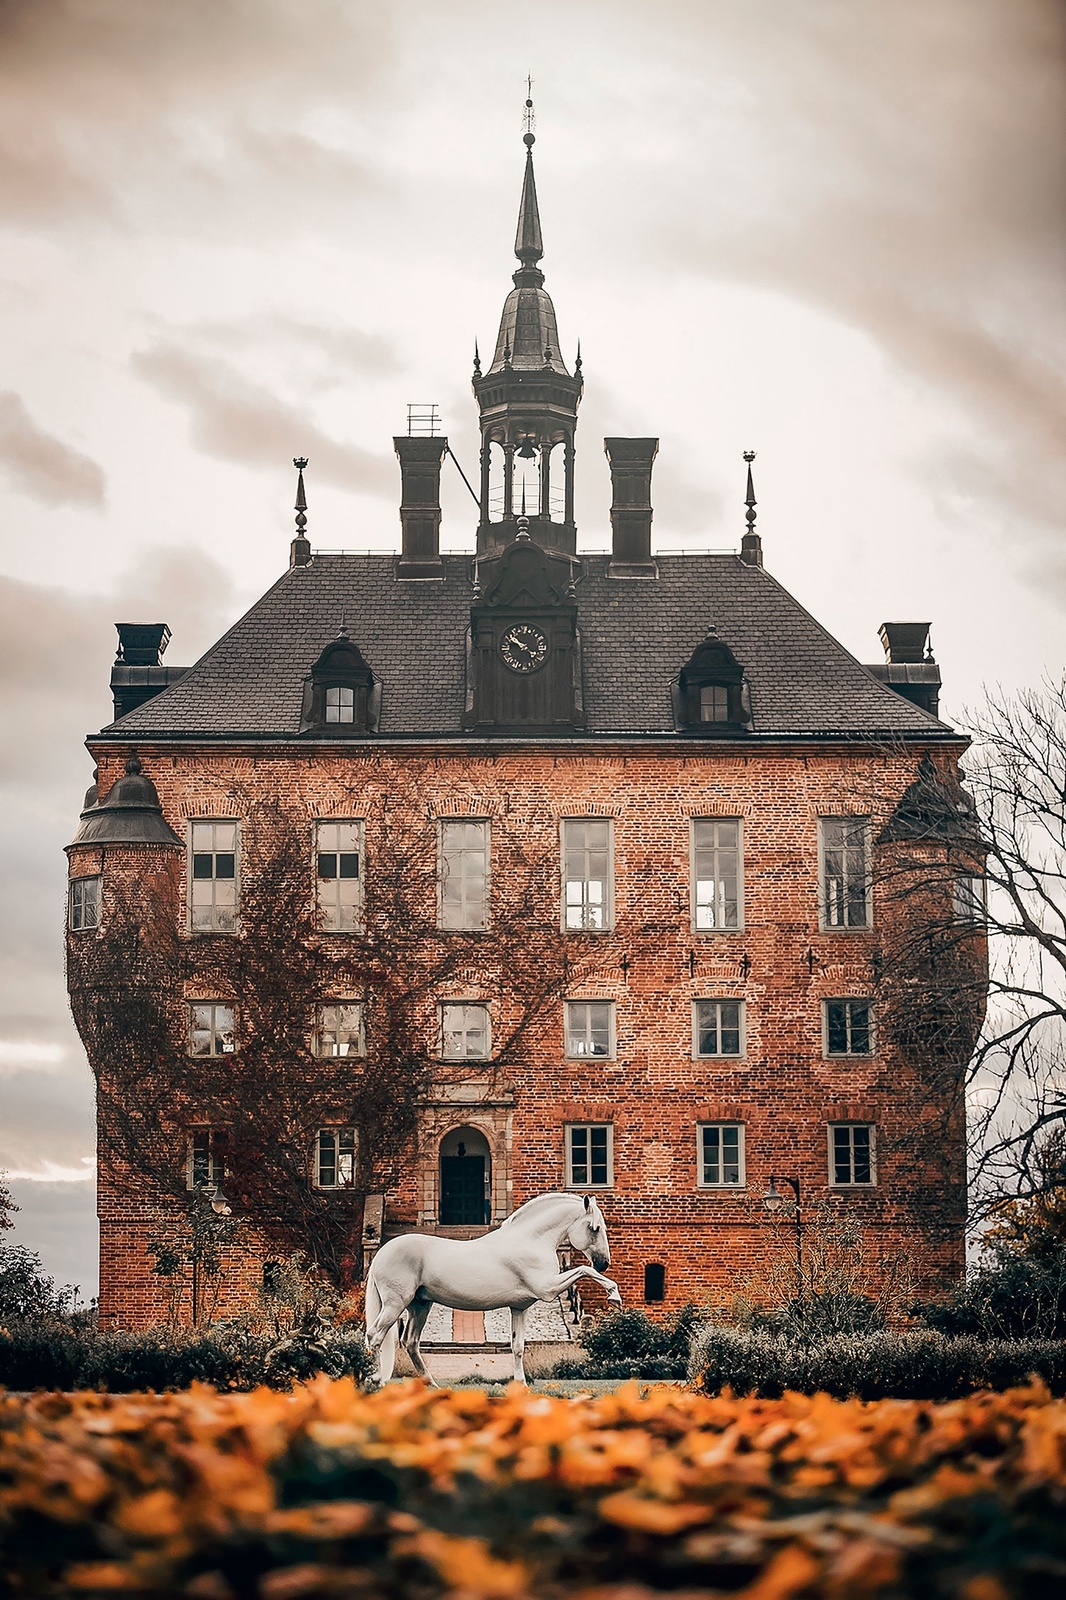 Hästfotografen Jenna Vainionpääs utställning ​"Sagolika hästar i slott och ruiner" visas på Borgholms slott sommaren 2023.